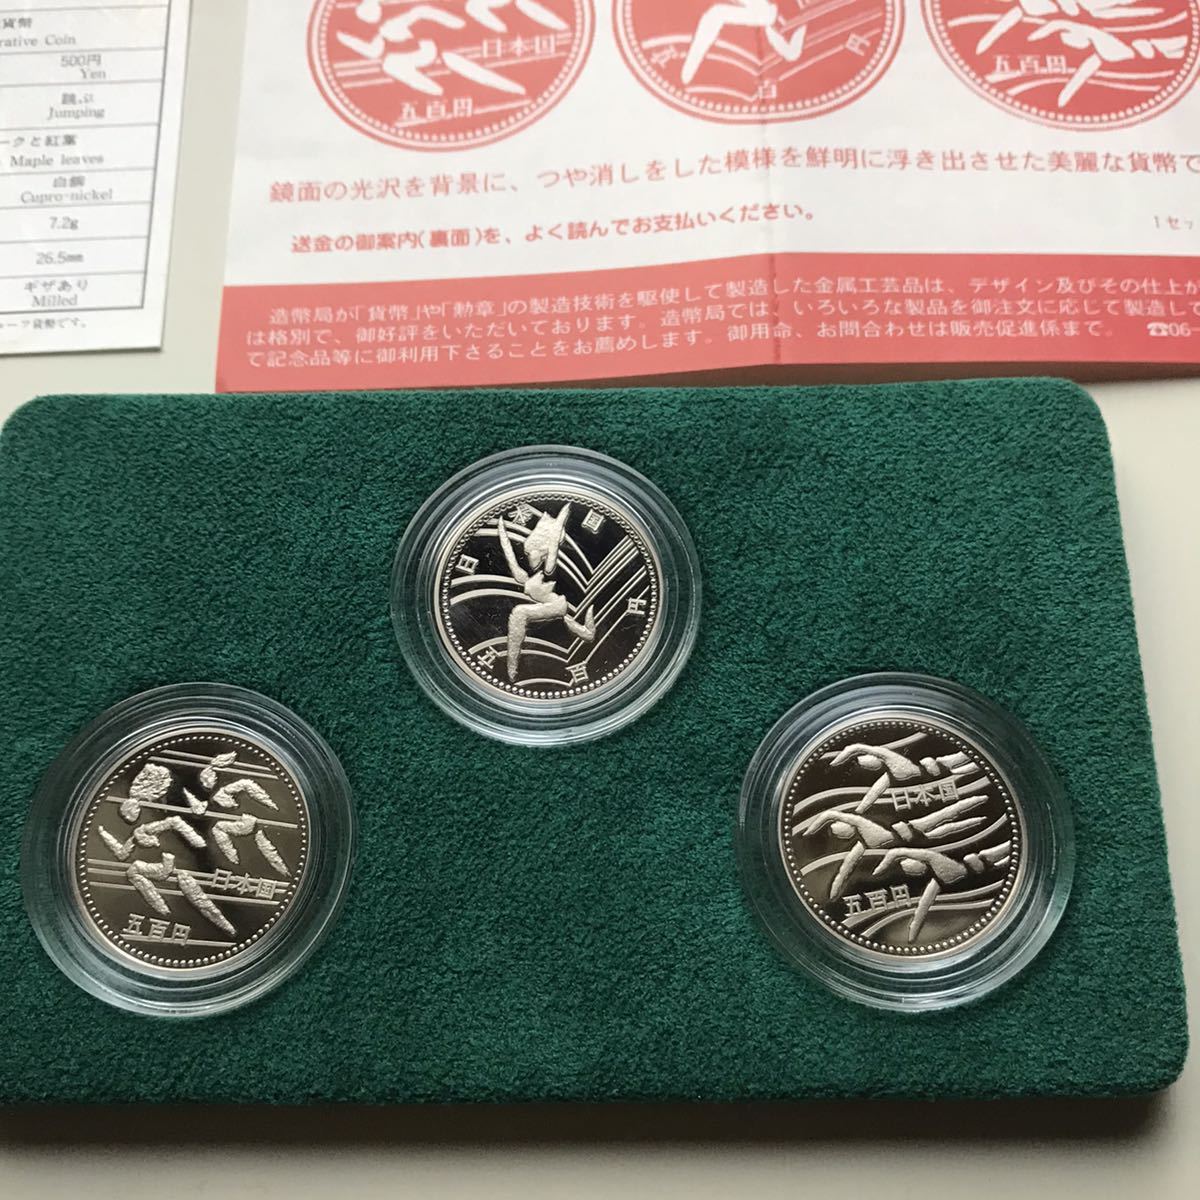 第12回アジア競技大会 記念プルーフセット 1994年 平成6年 大蔵省造幣局 プルーフ記念硬貨 Japanese proof coins_画像5